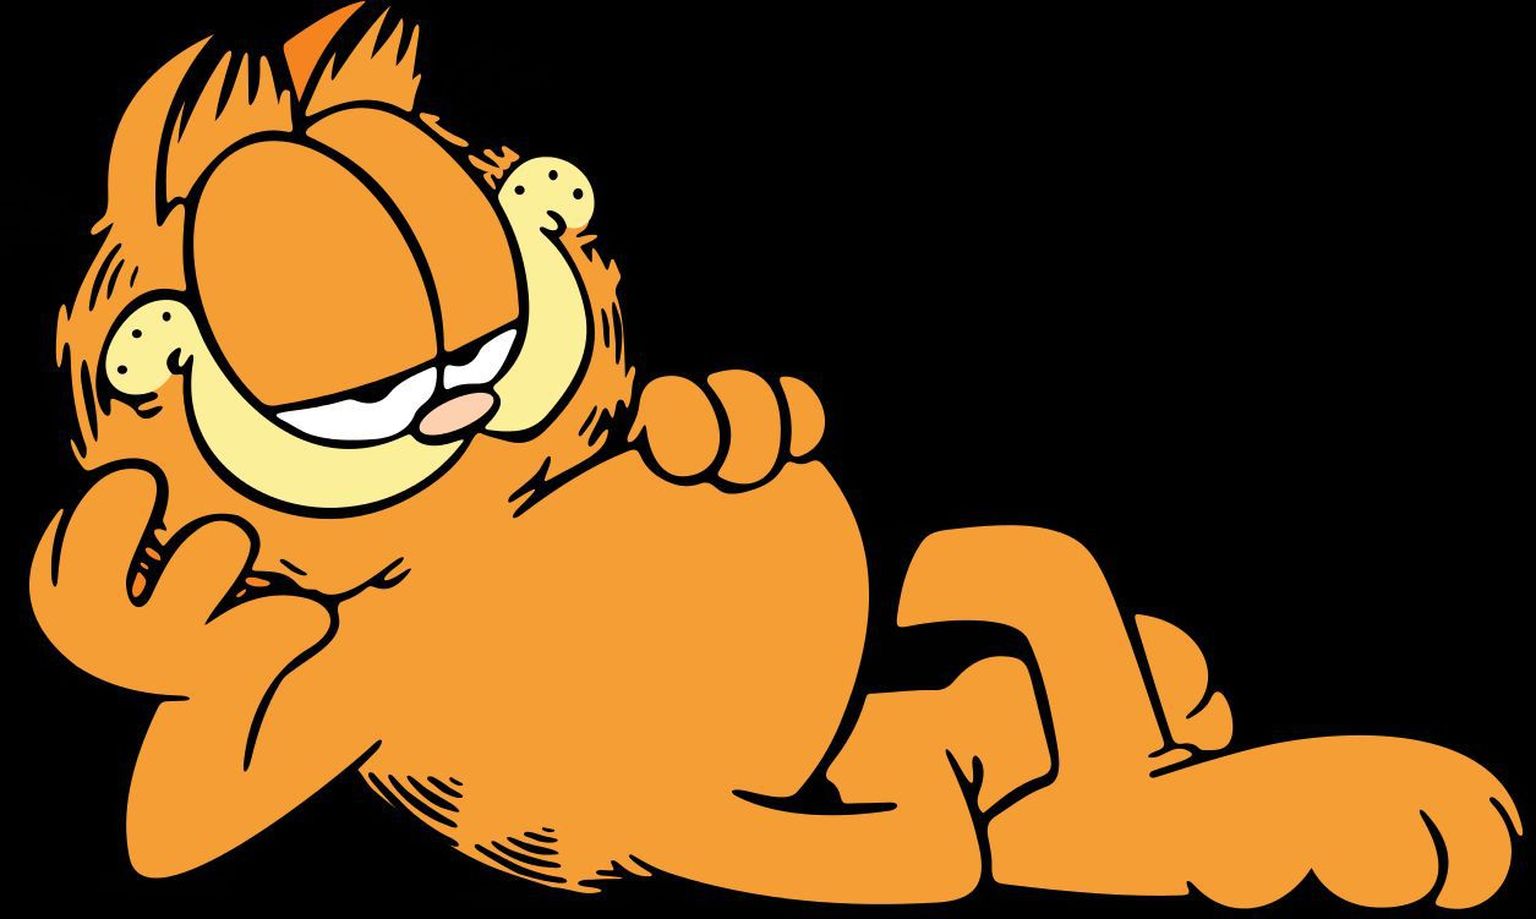 Anima- ja koomiksikass Garfield